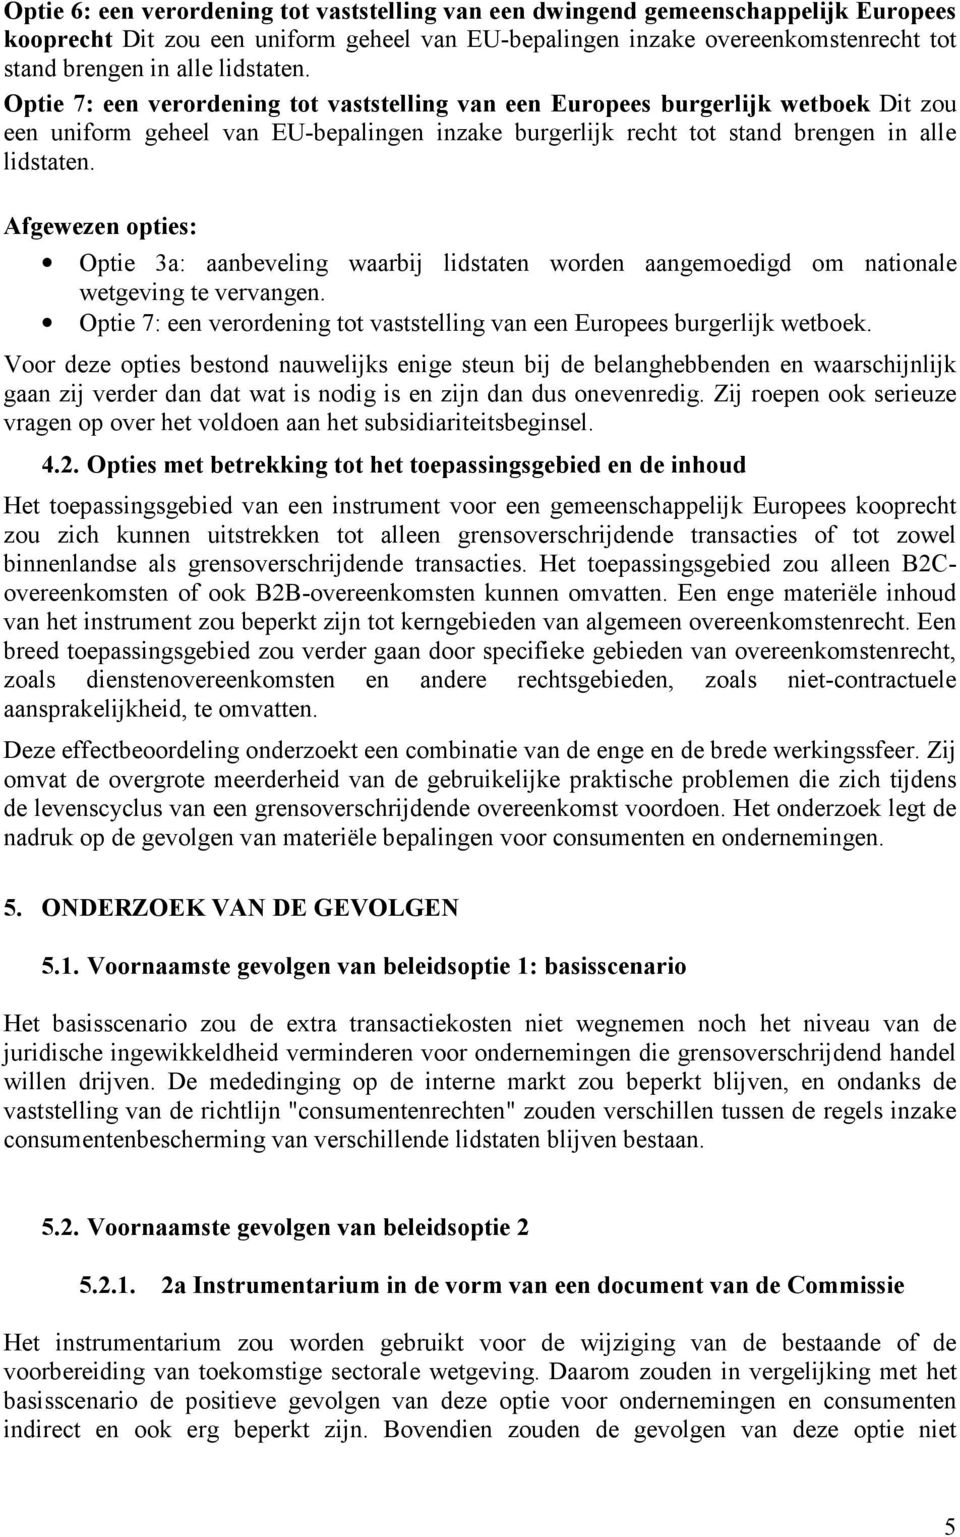 Afgewezen opties: Optie 3a: aanbeveling waarbij lidstaten worden aangemoedigd om nationale wetgeving te vervangen. Optie 7: een verordening tot vaststelling van een Europees burgerlijk wetboek.